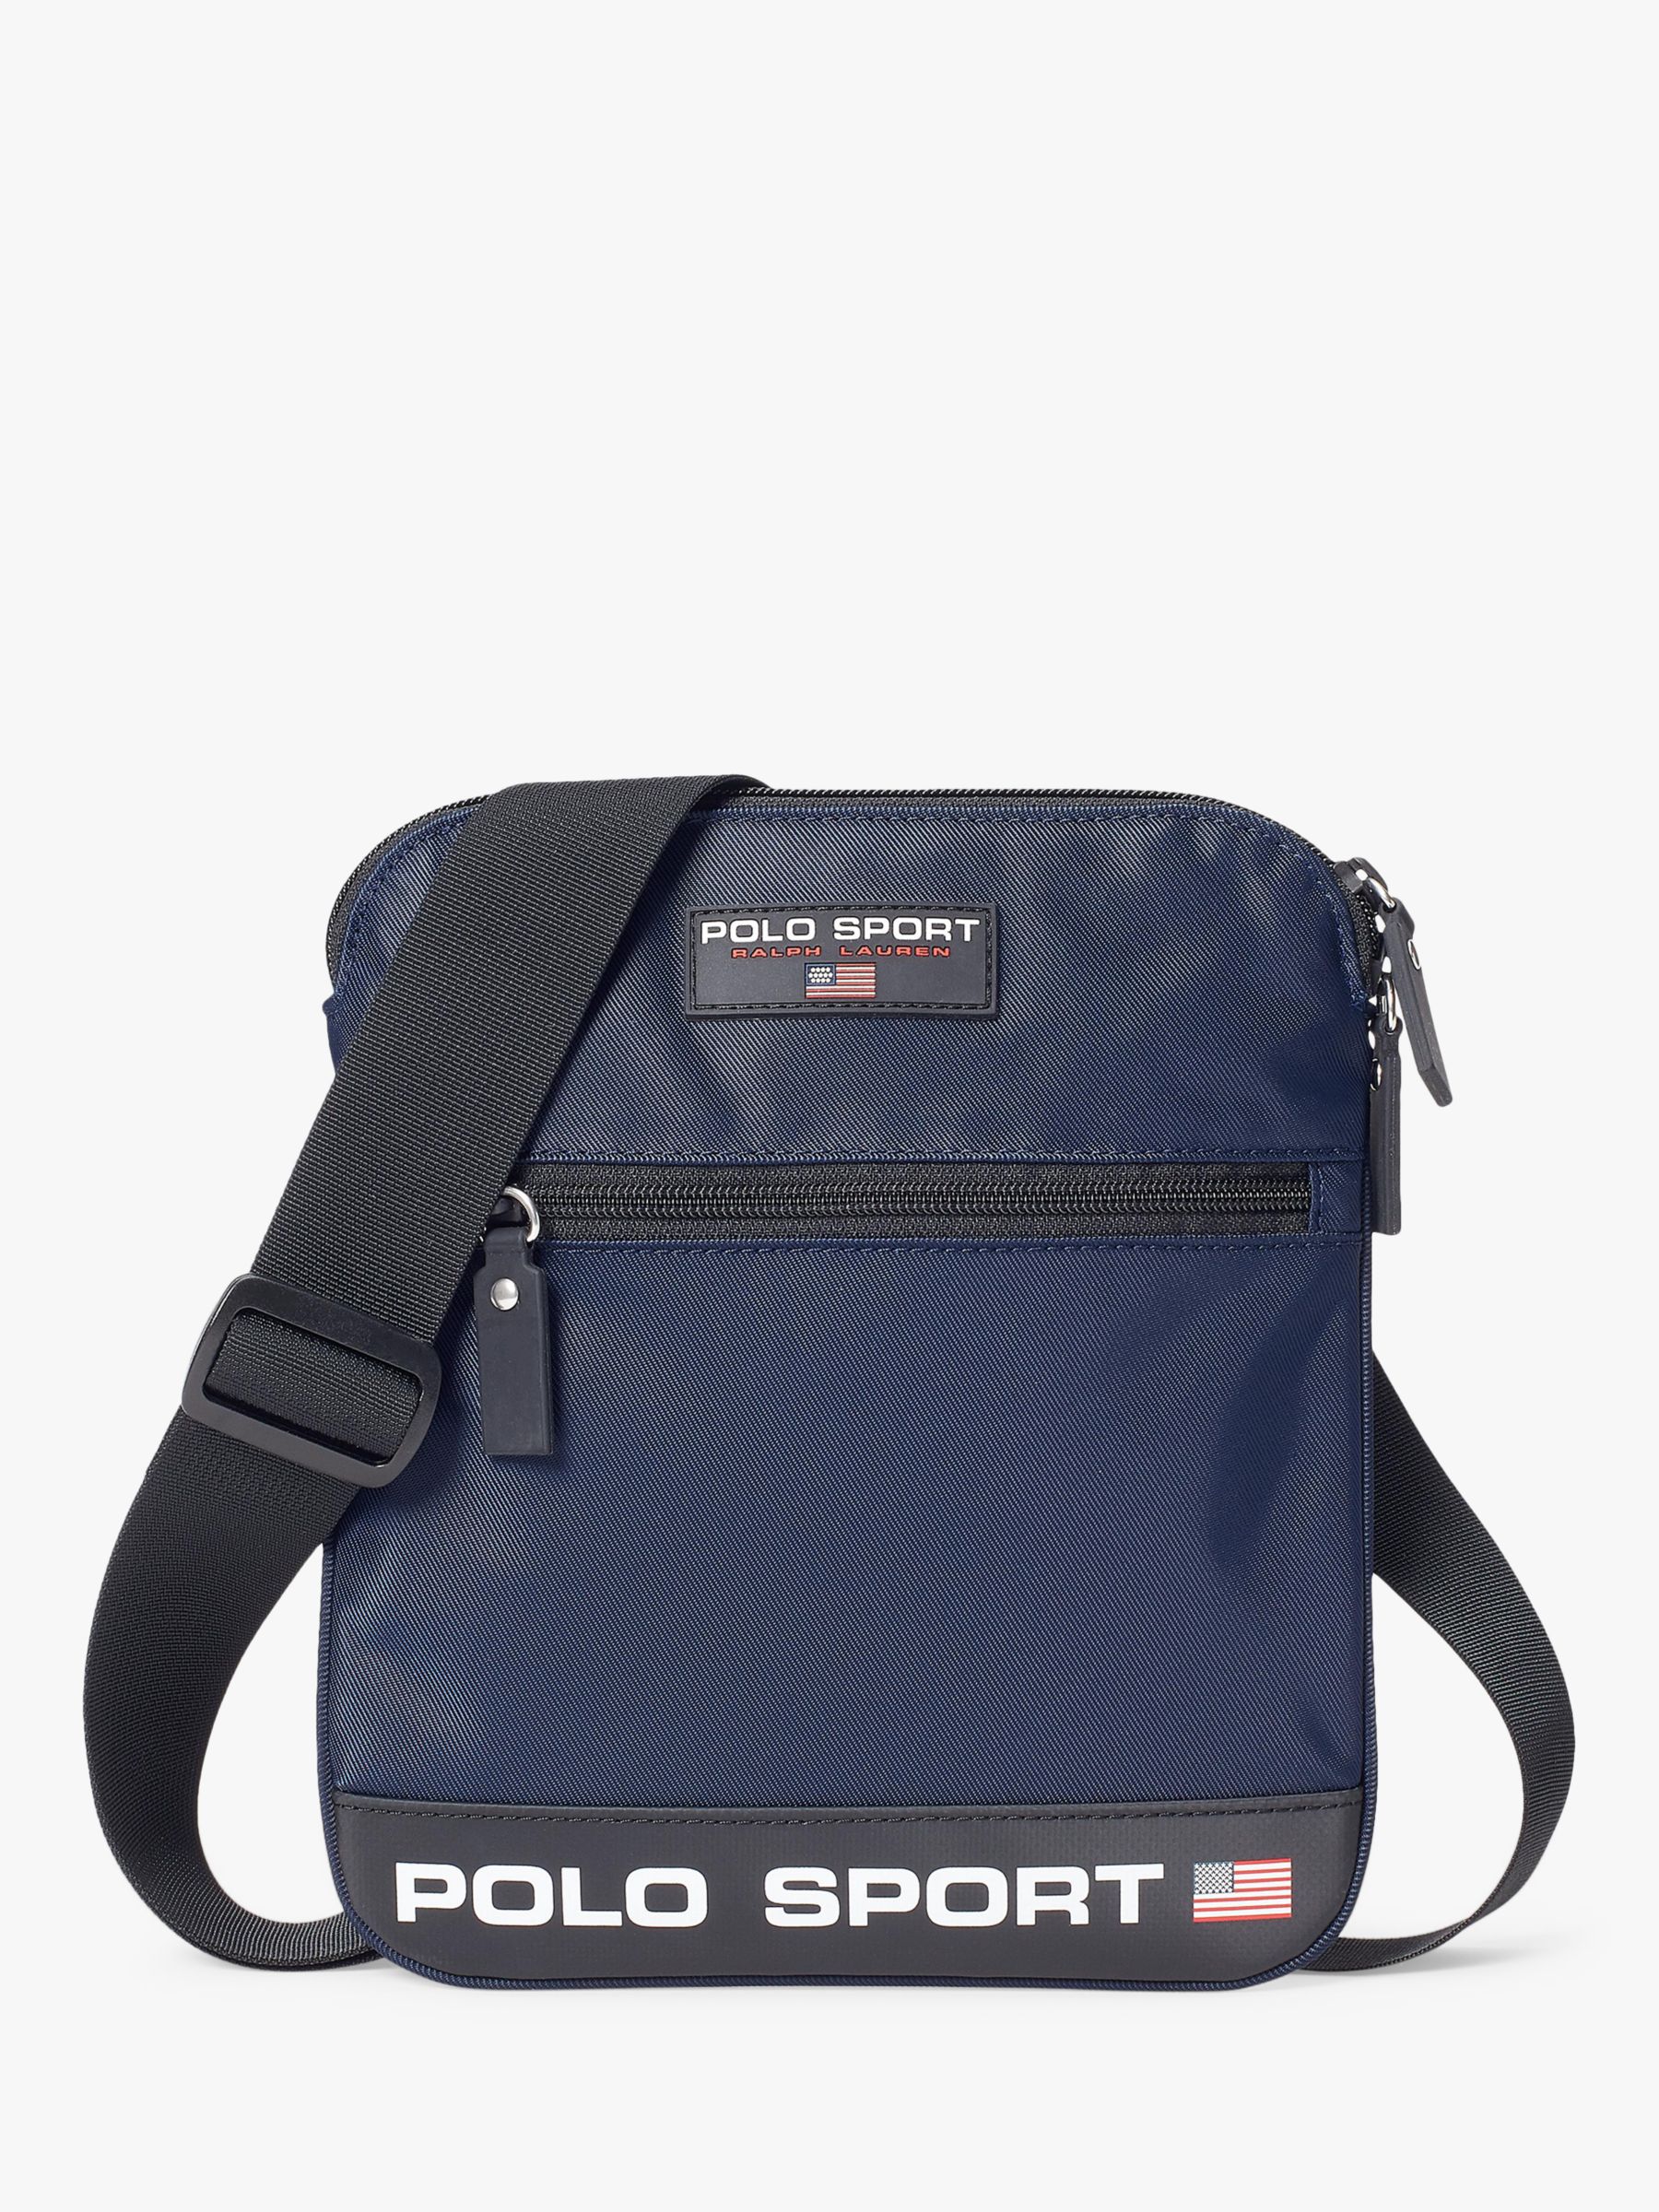 Polo Ralph Lauren Polo Sport Crossbody Bag, Navy